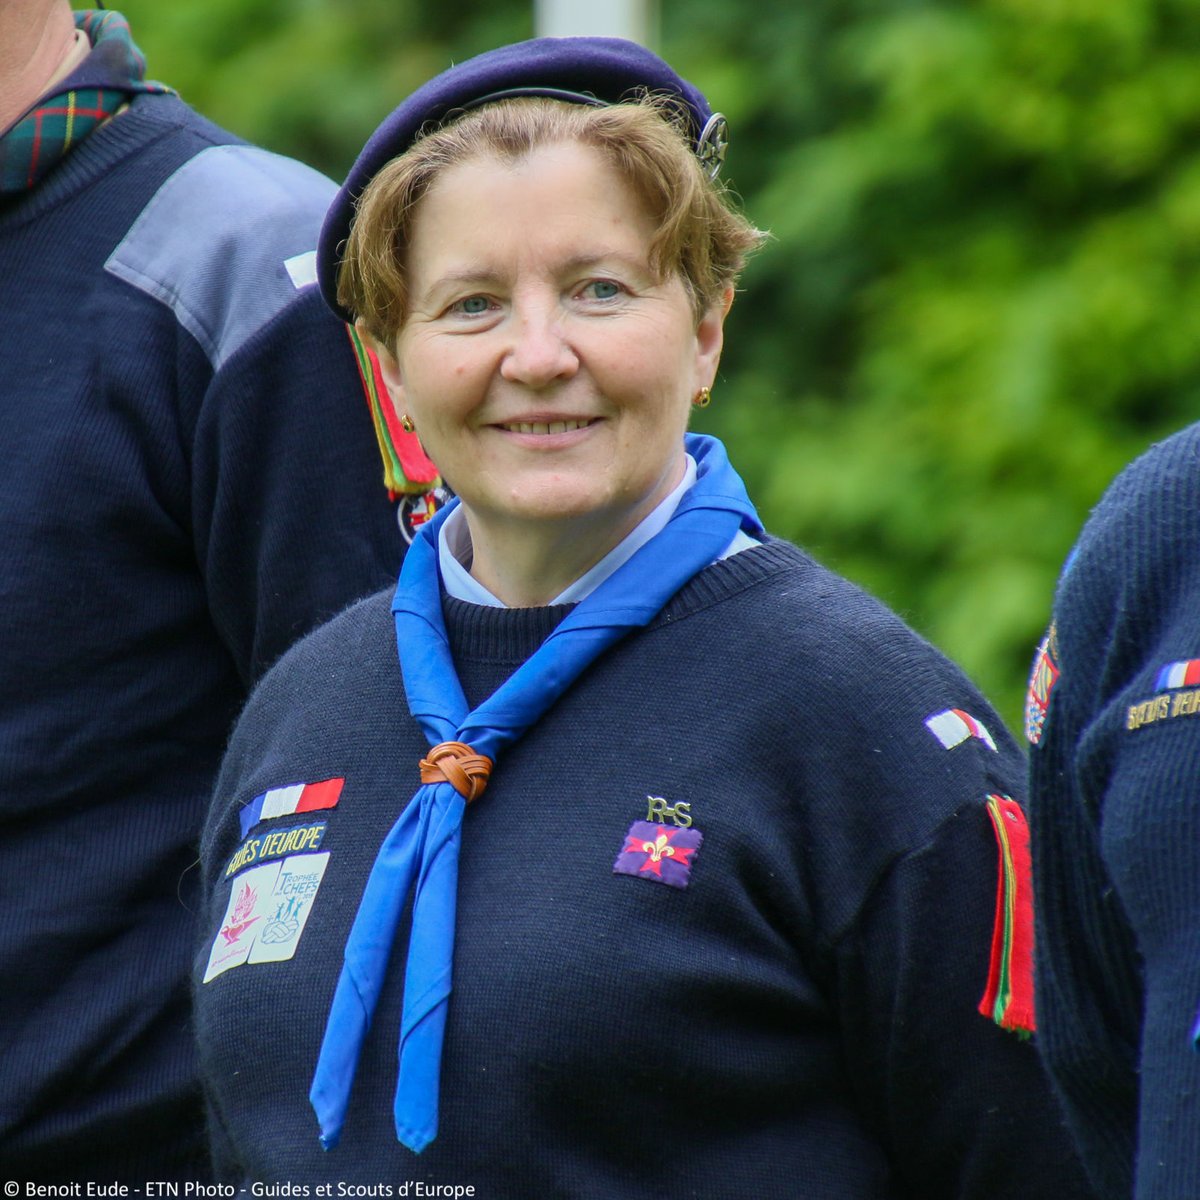 Guides et Scouts d'Europe - France on X: "« Un camp #scout n'est pas une  colonie de #vacances » Retrouvez l'entretien de notre présidente Aline  Doneaud au @Figaro_Etudiant ↘️ https://t.co/AY952QeF2f" / X